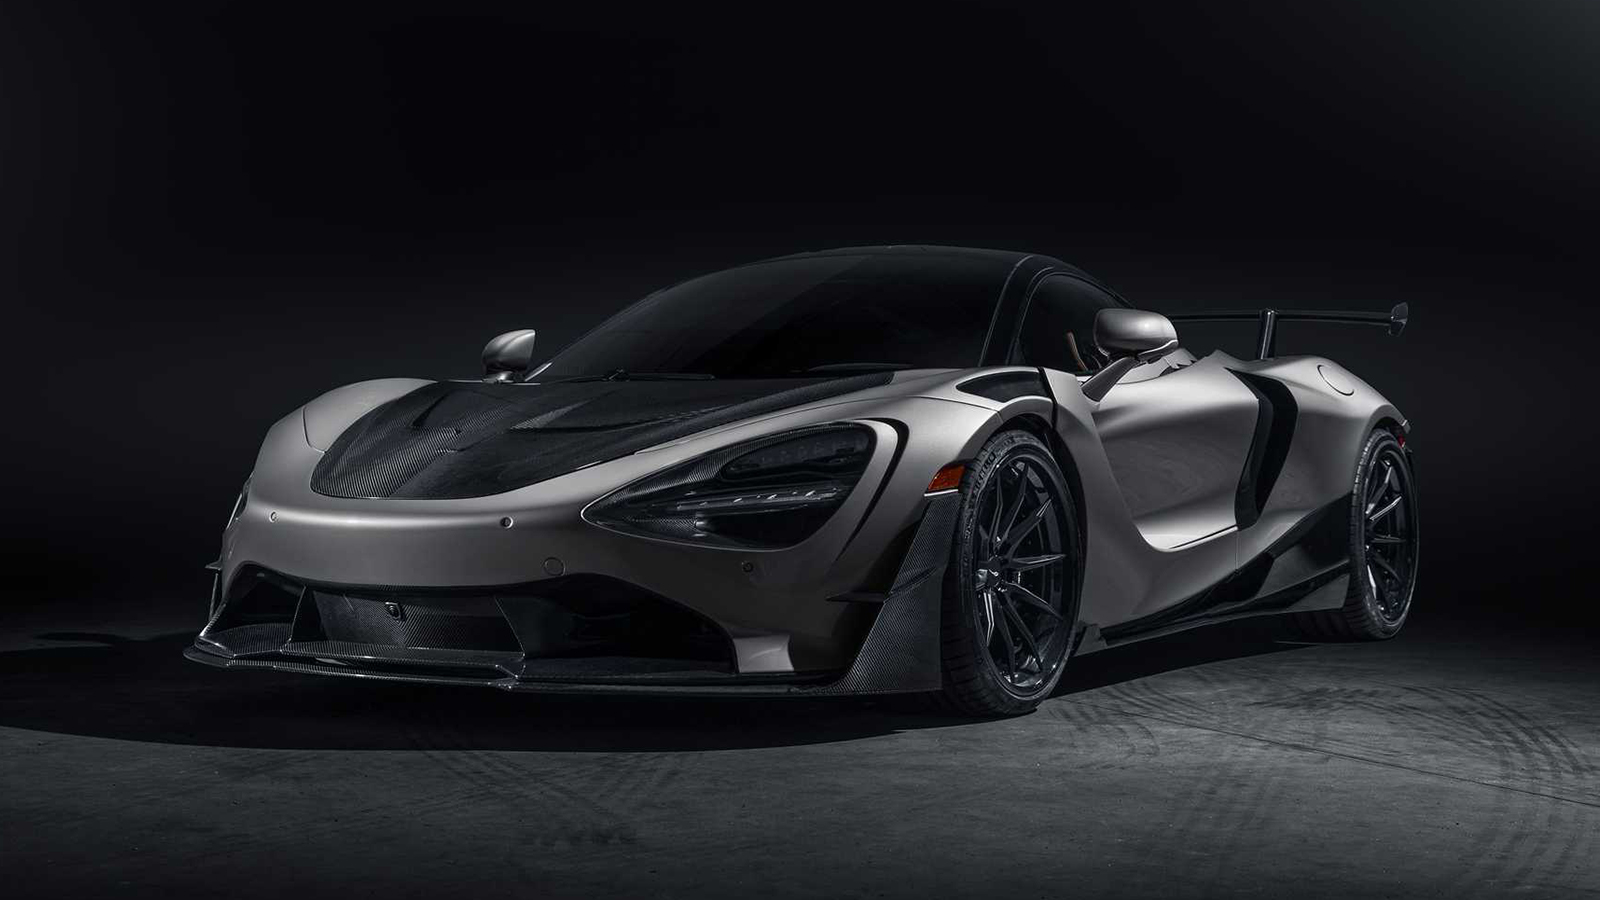 Bộ body kit in 3D cho McLaren 720S là sản phẩm hoàn hảo để nâng cấp và tăng thêm tính thể thao cho chiếc xe của bạn. Với thiết kế tinh tế, bộ body kit này sẽ khiến chiếc xe của bạn trở nên độc đáo và thu hút mọi sự chú ý trên đường phố.